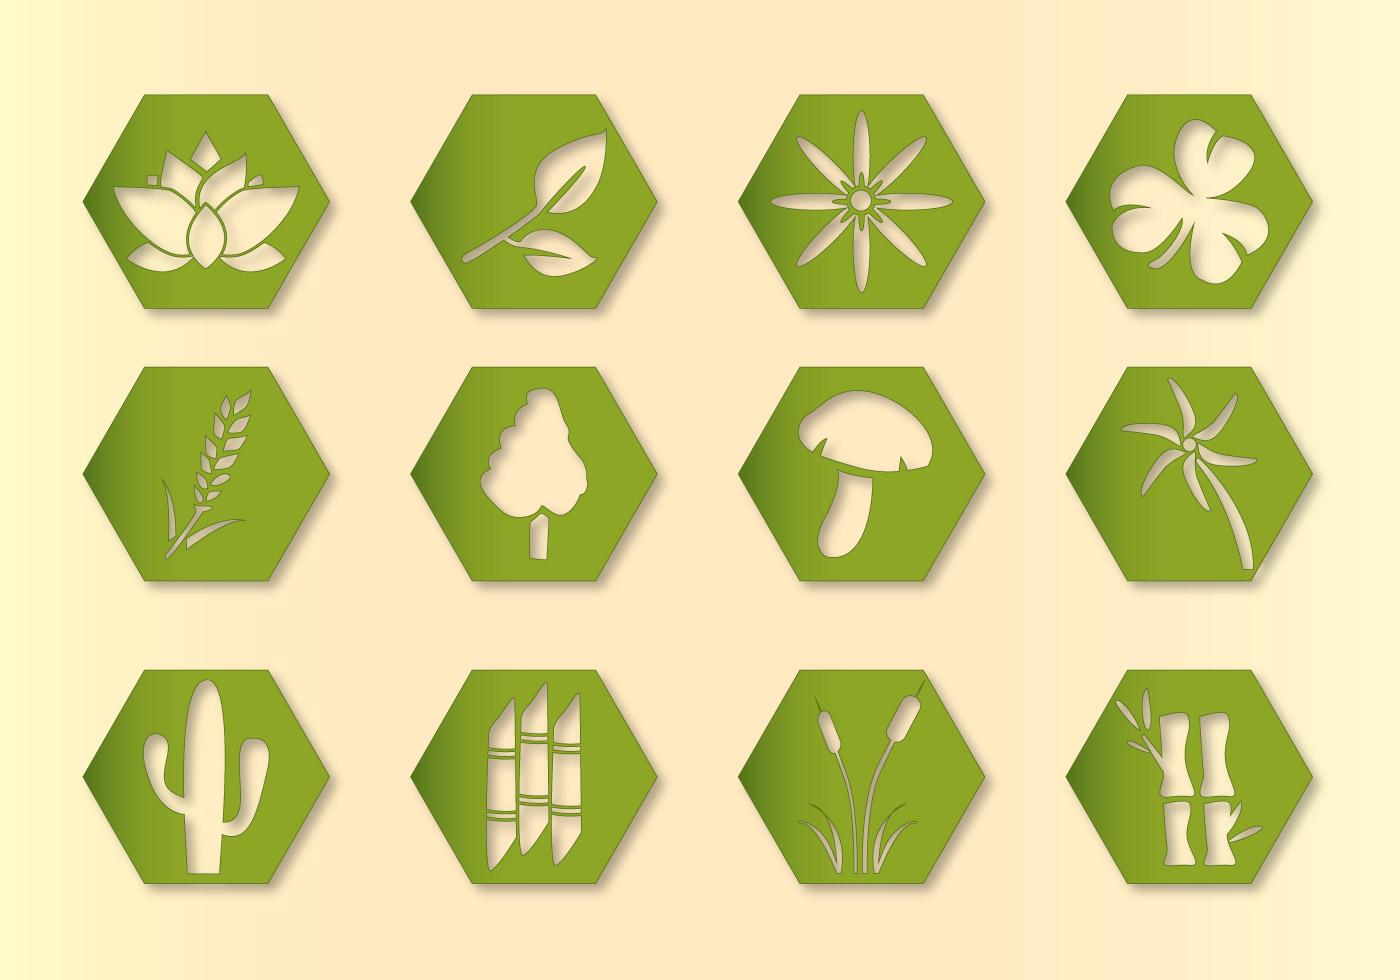 Горшок символ. Растения пиктограмма. Растение иконка. Растительность значок. Ярлыки для растений.